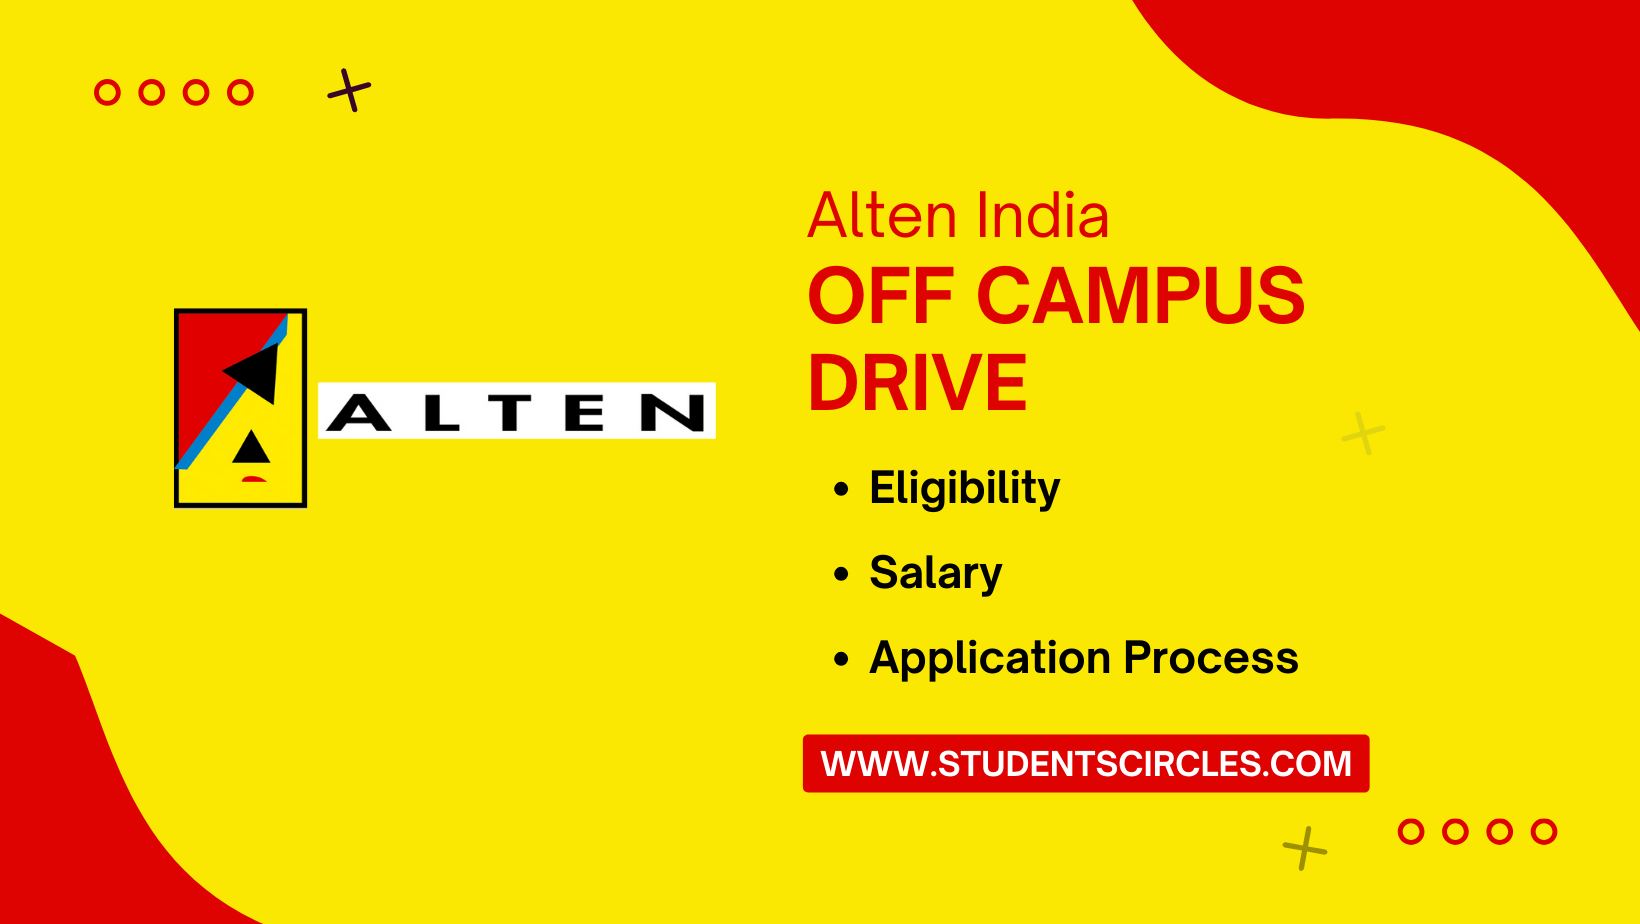 Alten India Off Campus Drive